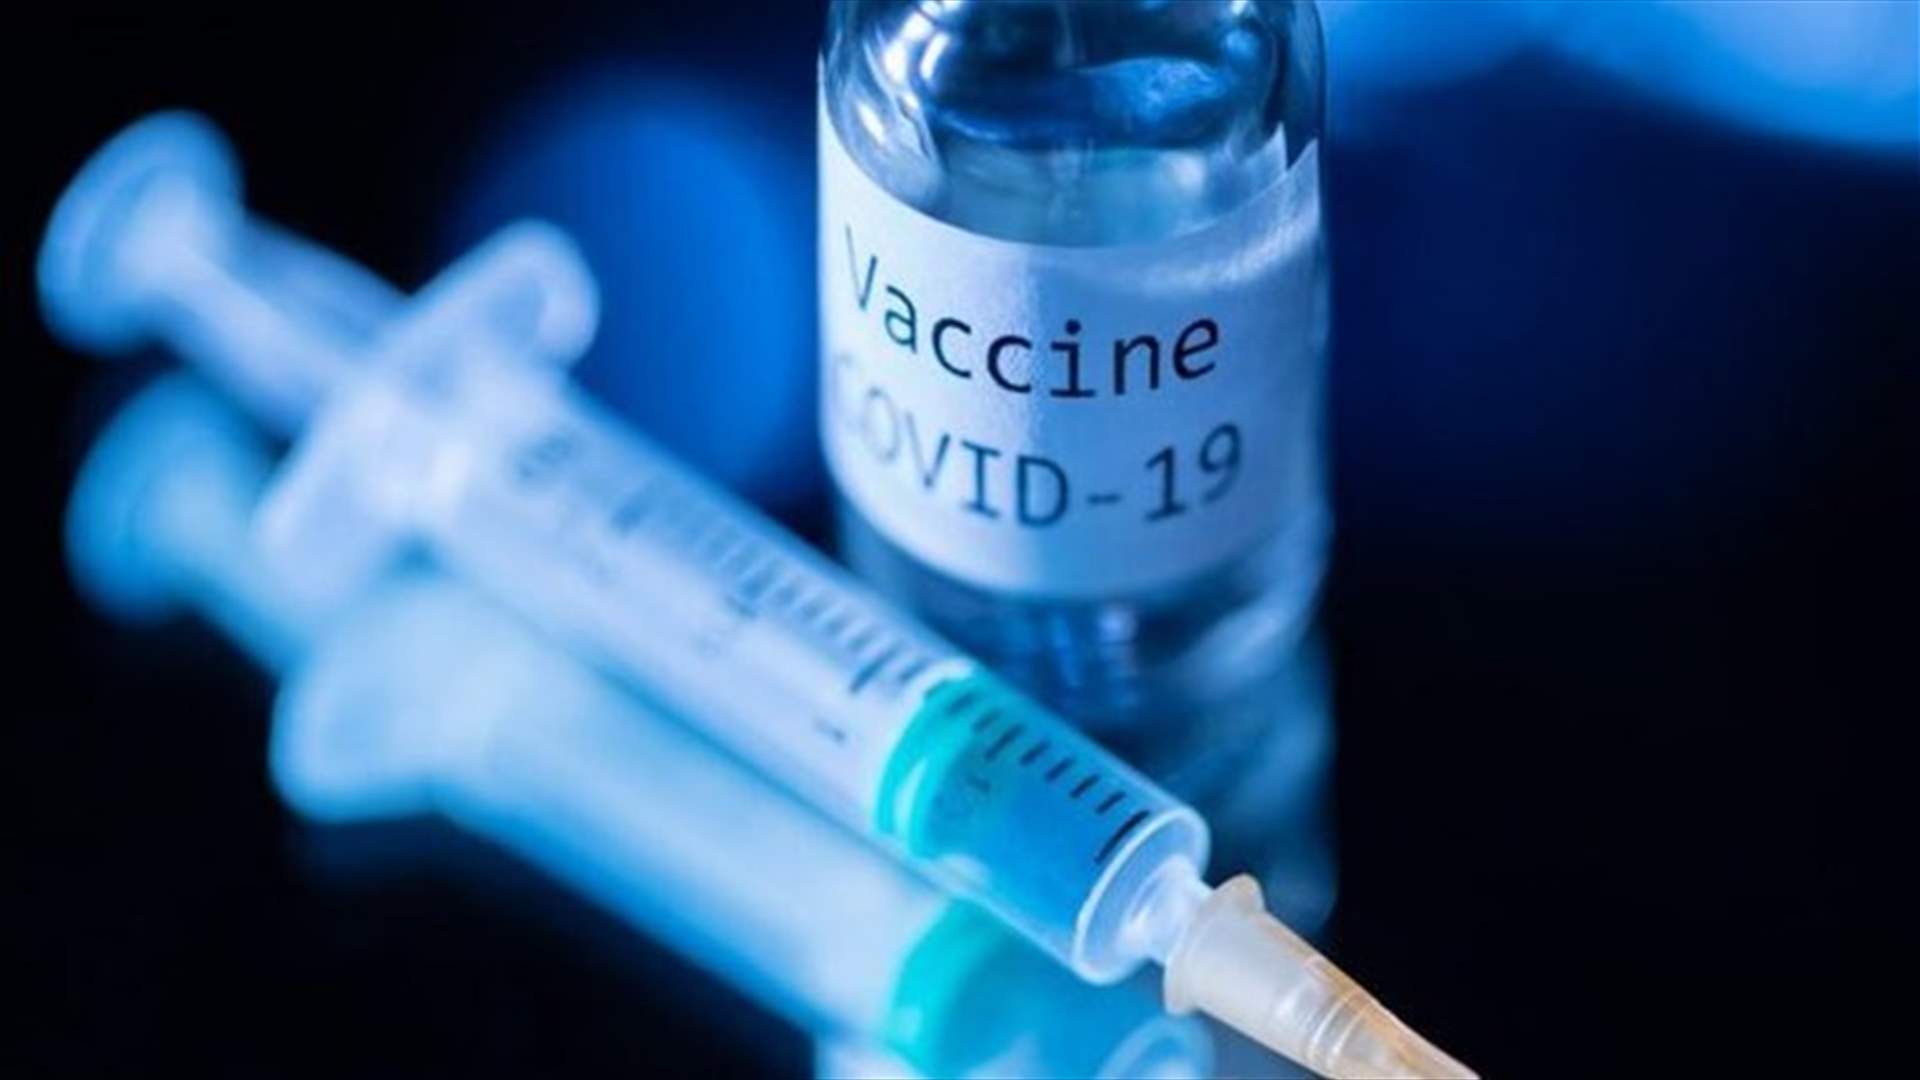 الأمم المتحدة تعتبر التطعيم الإجباري غير مقبول تحت أي ظرف كان